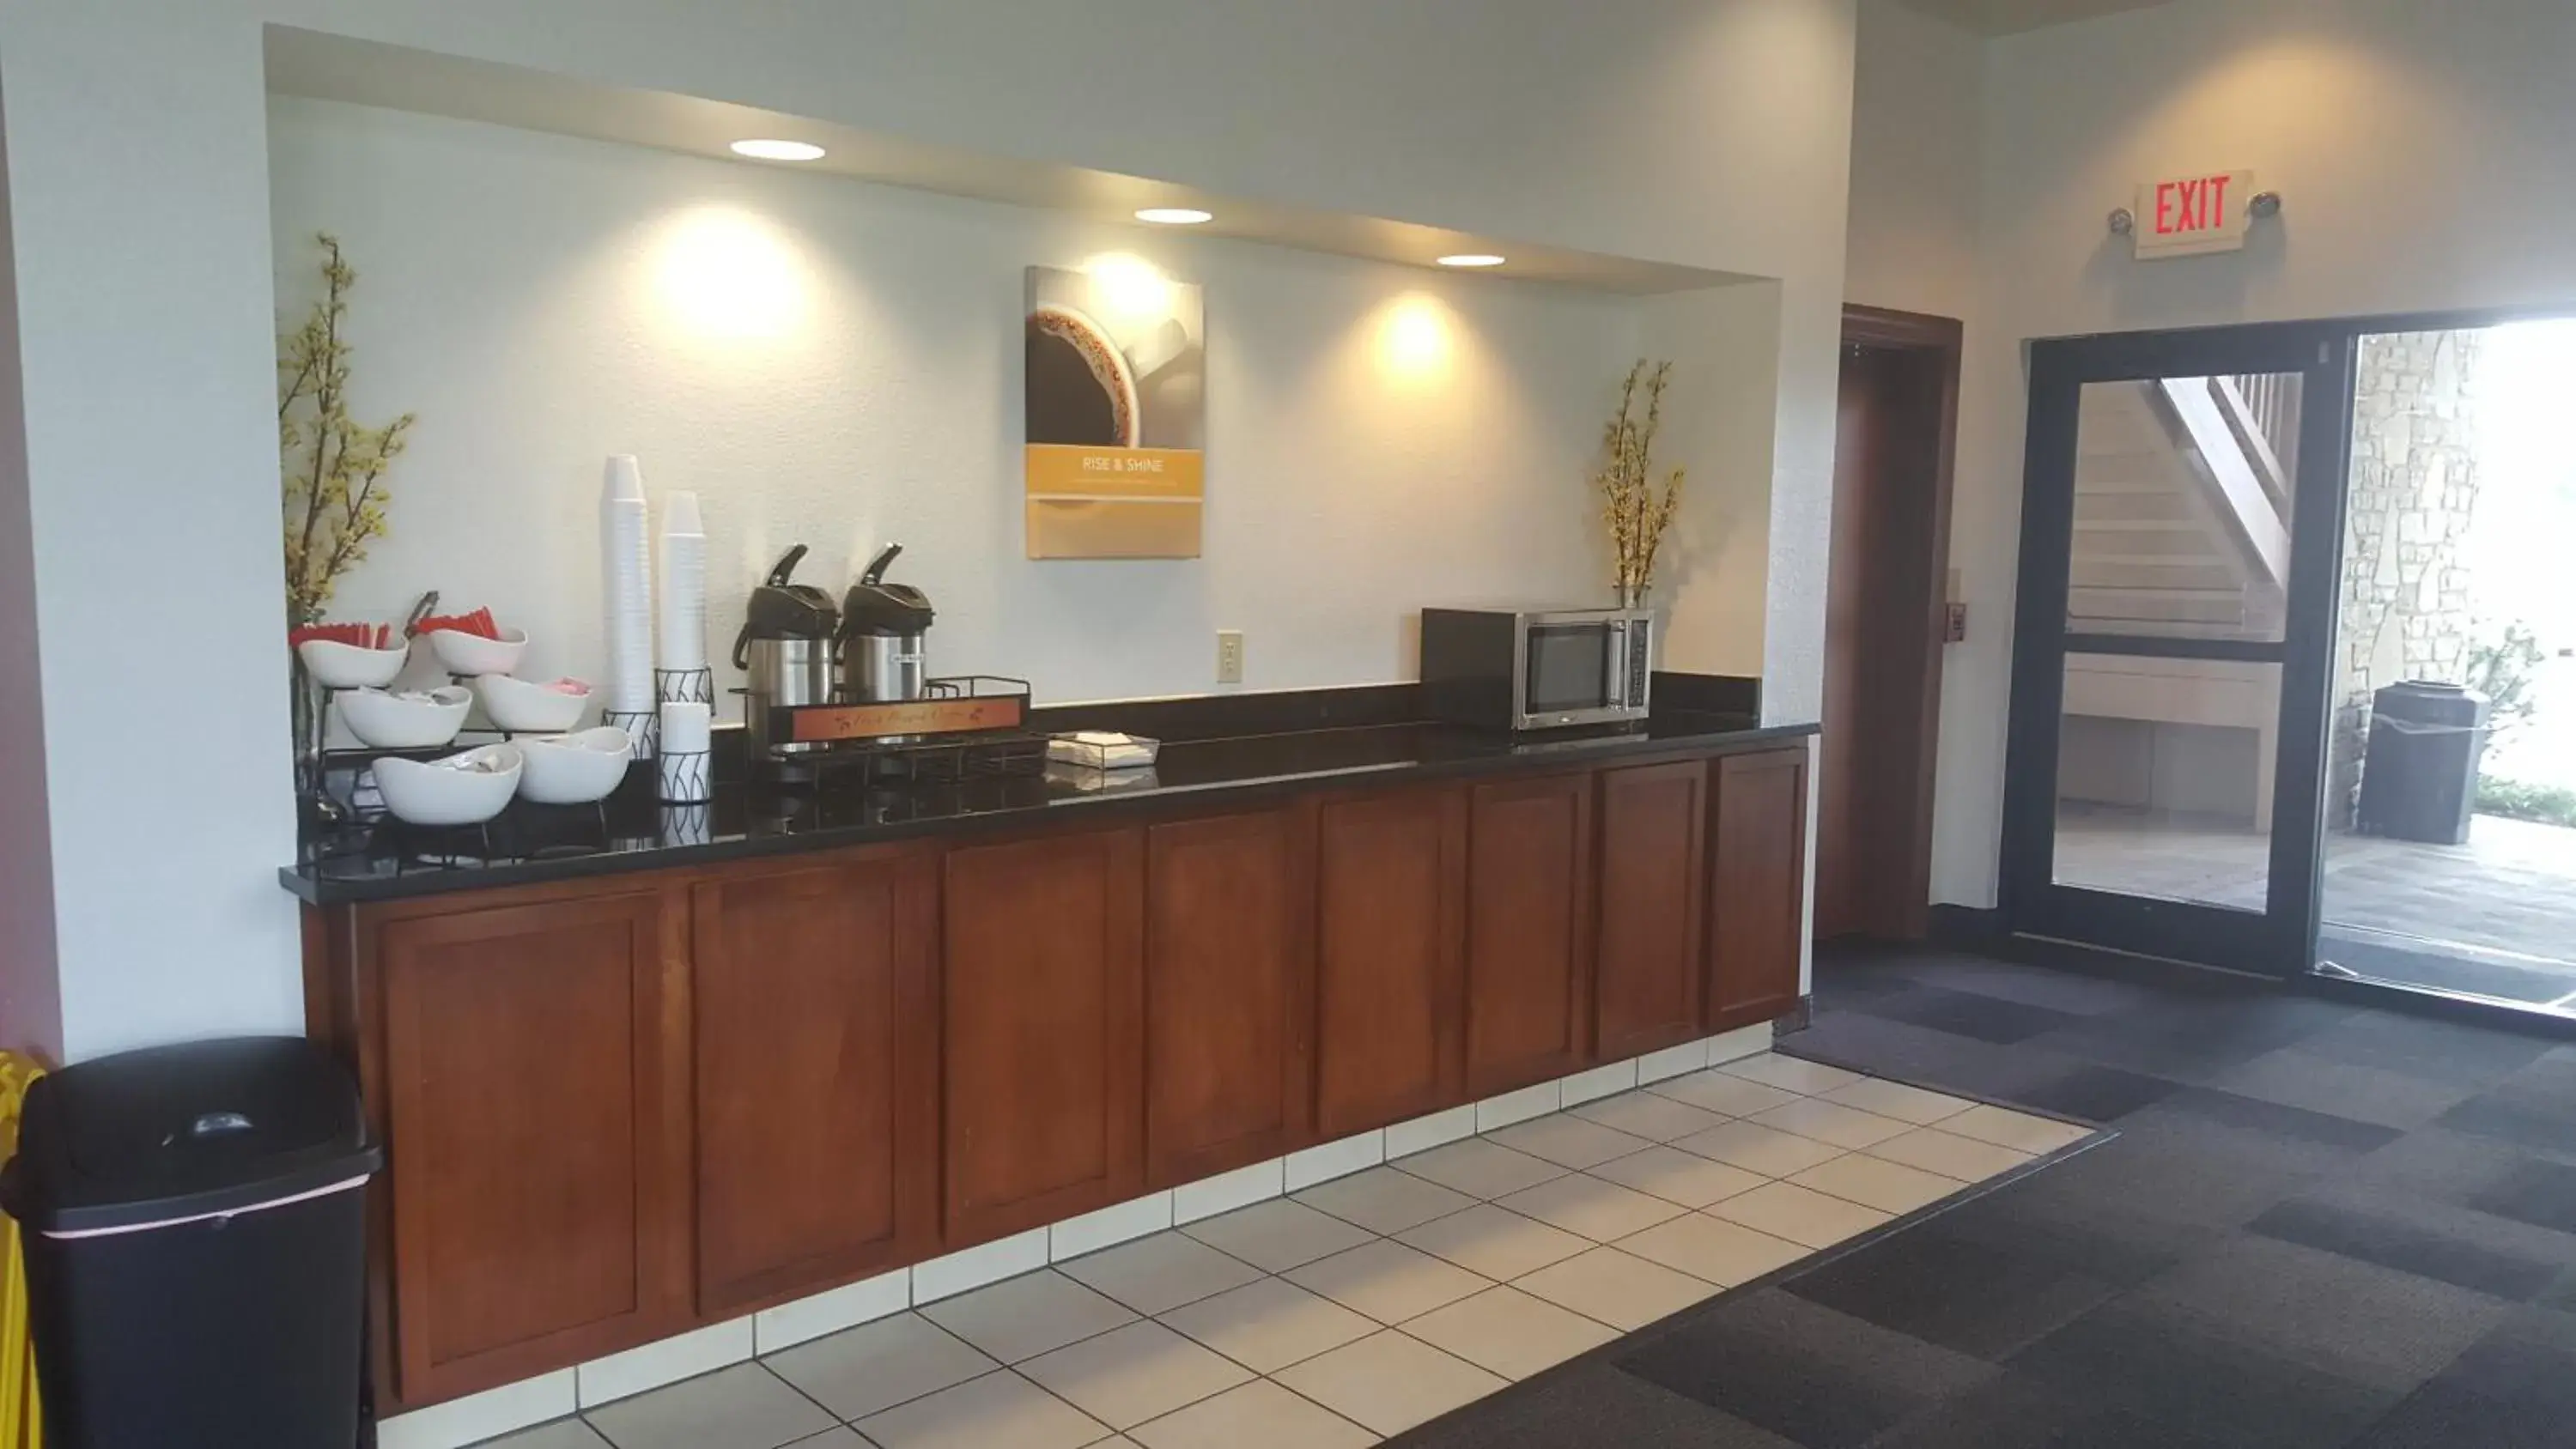 Lobby or reception, Lobby/Reception in Motel 6-Columbus, OH - OSU